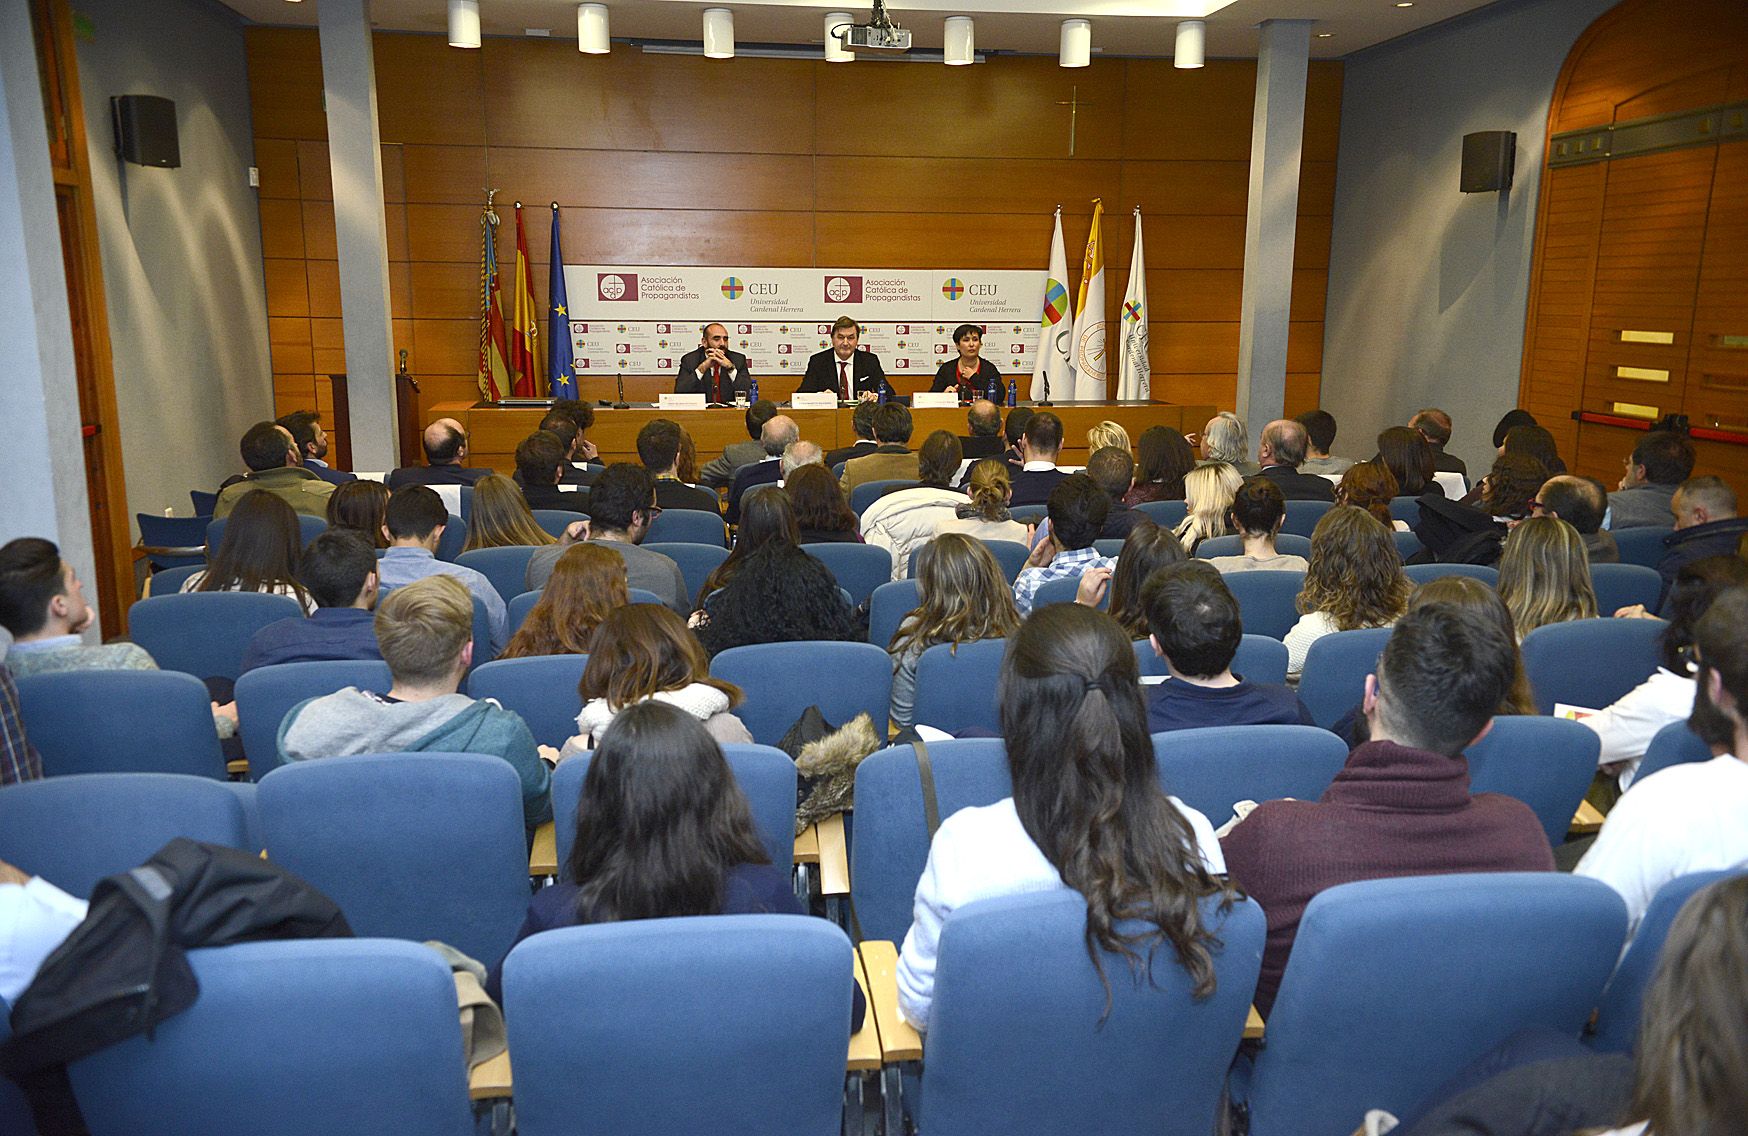 La conferencia congregó a un numeroso público, entre estudiantes y profesores del CEU y representantes del sector empresarial valenciano